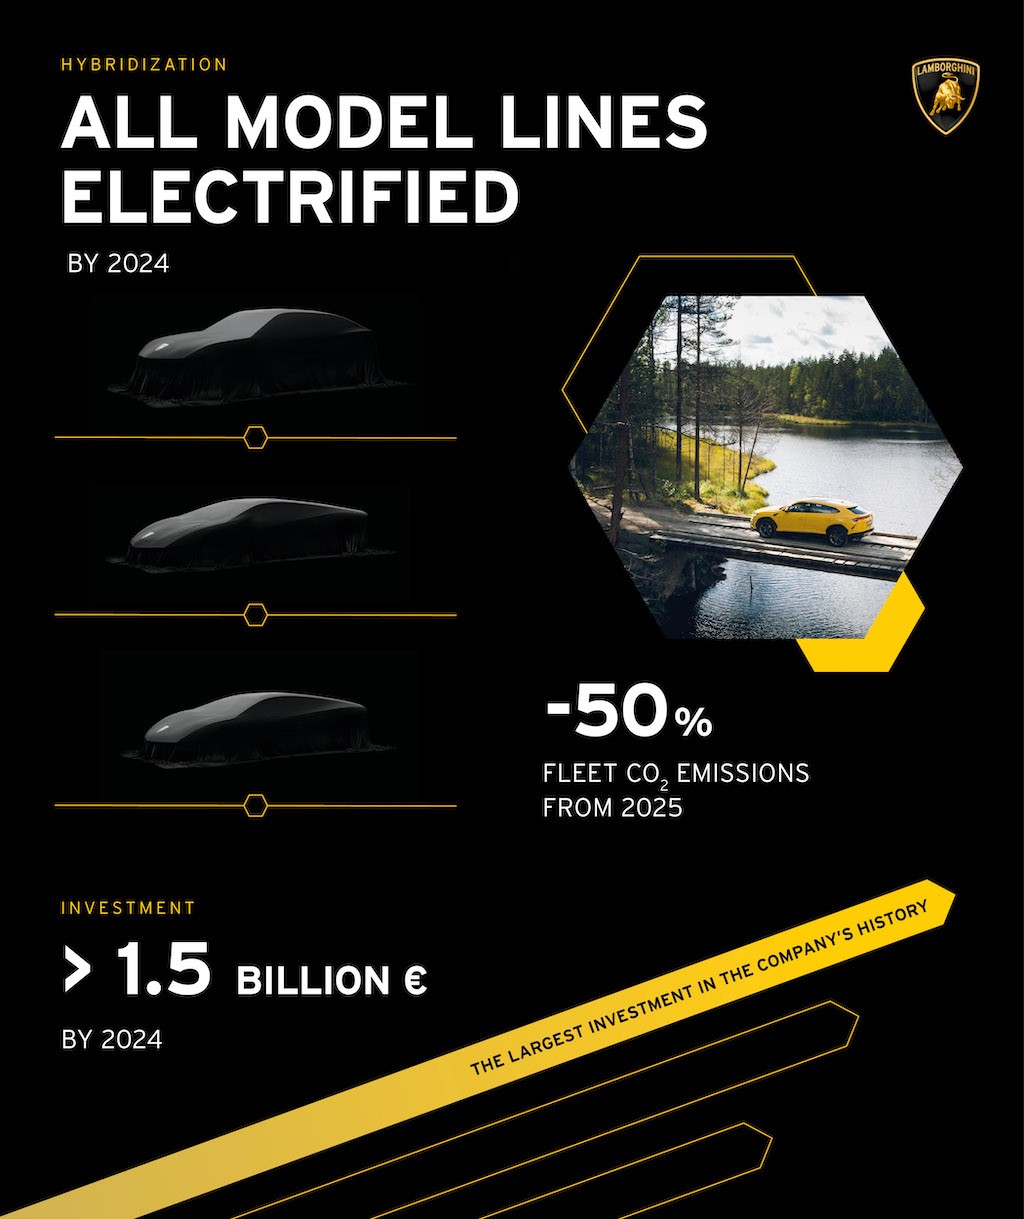 “Ông tổng” Lamborghini hé lộ thêm về các siêu xe mới: hậu duệ Aventador sẽ siêu mạnh, bổ sung thêm xe tiện dụng ảnh 3